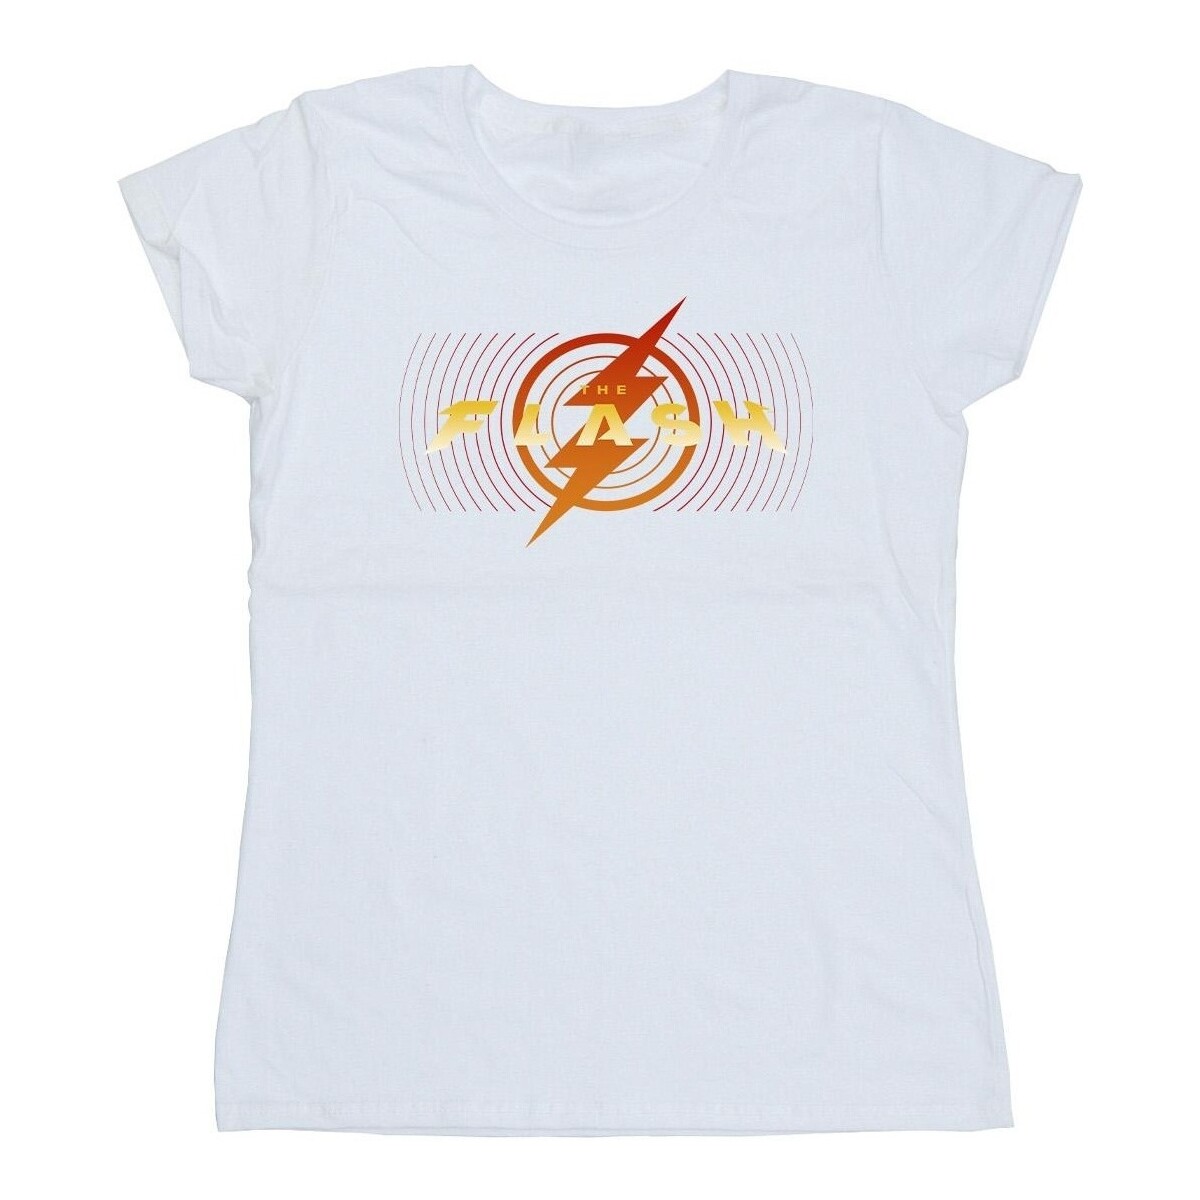 textil Mujer Camisetas manga larga Dc Comics The Flash Red Lightning Blanco